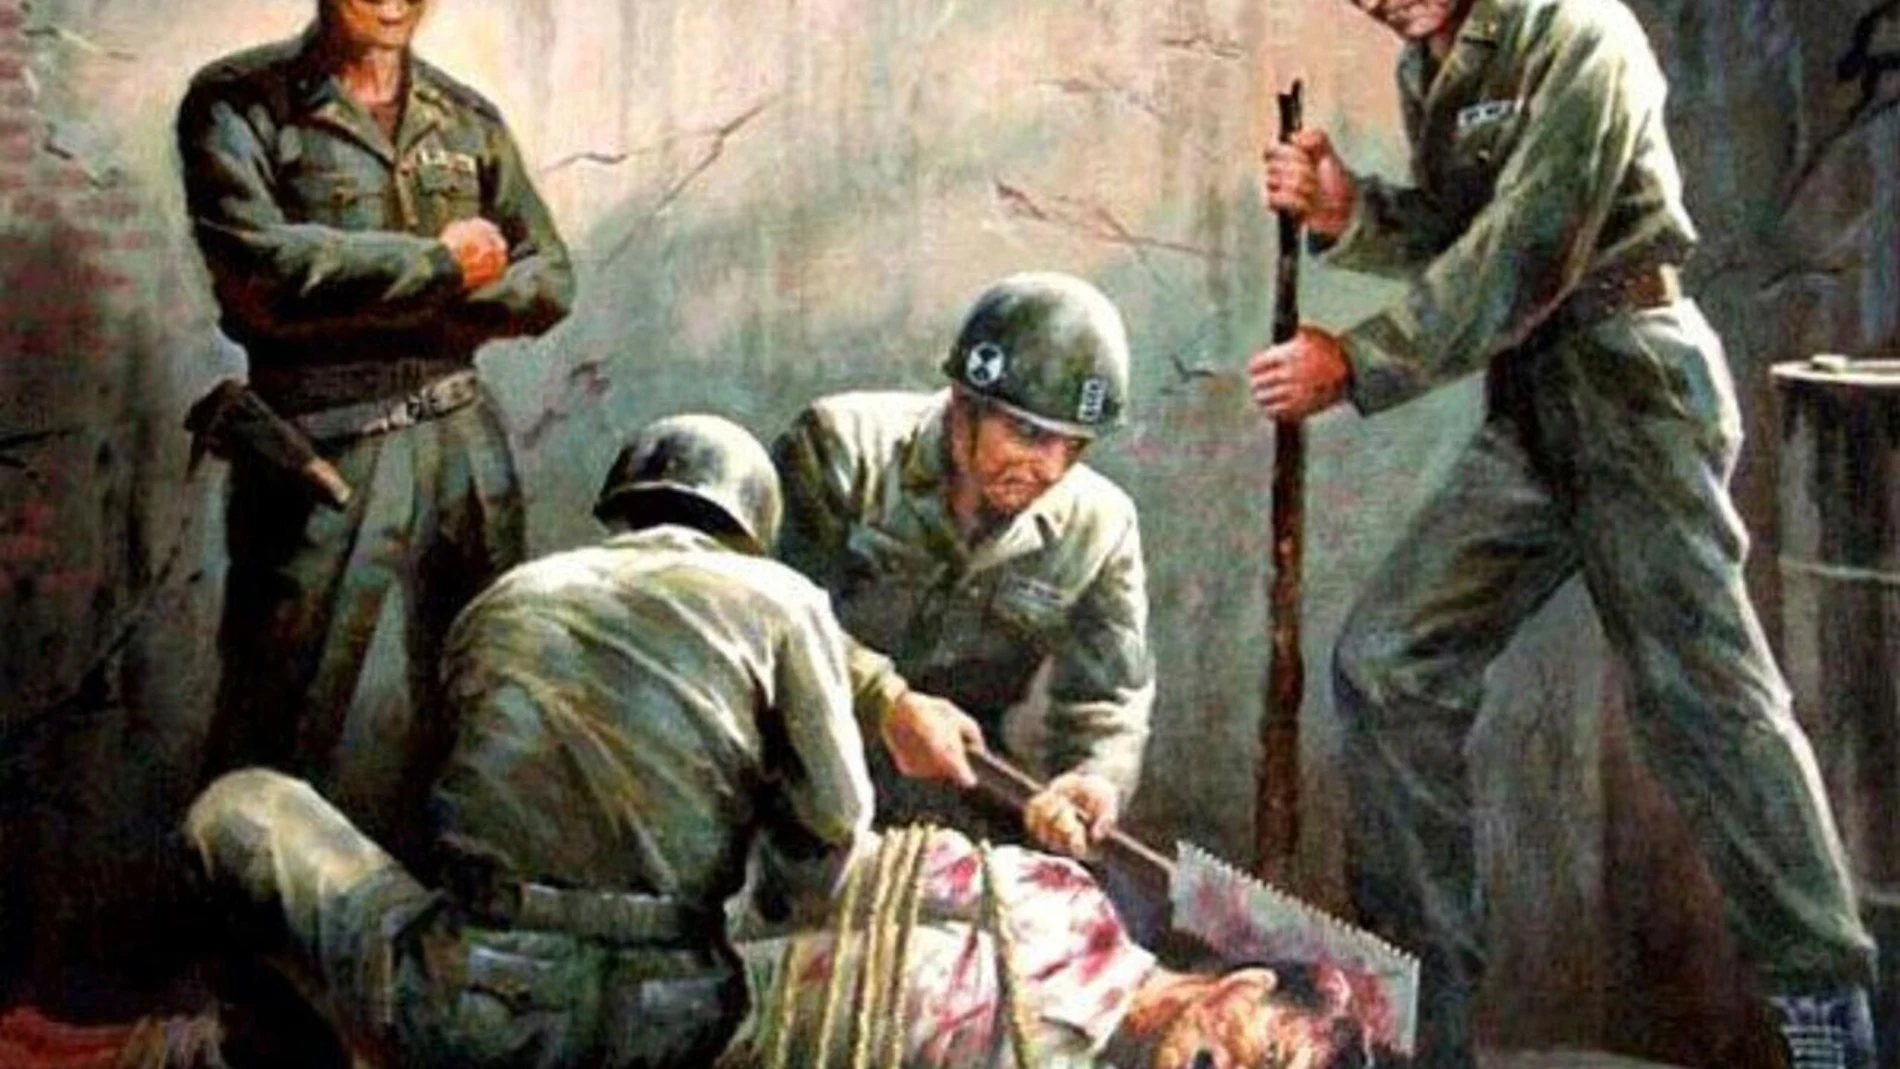 Imagen del museo de la masacre de Sinchon donde aparecen soldados estadounidenses torturando a coreanos.